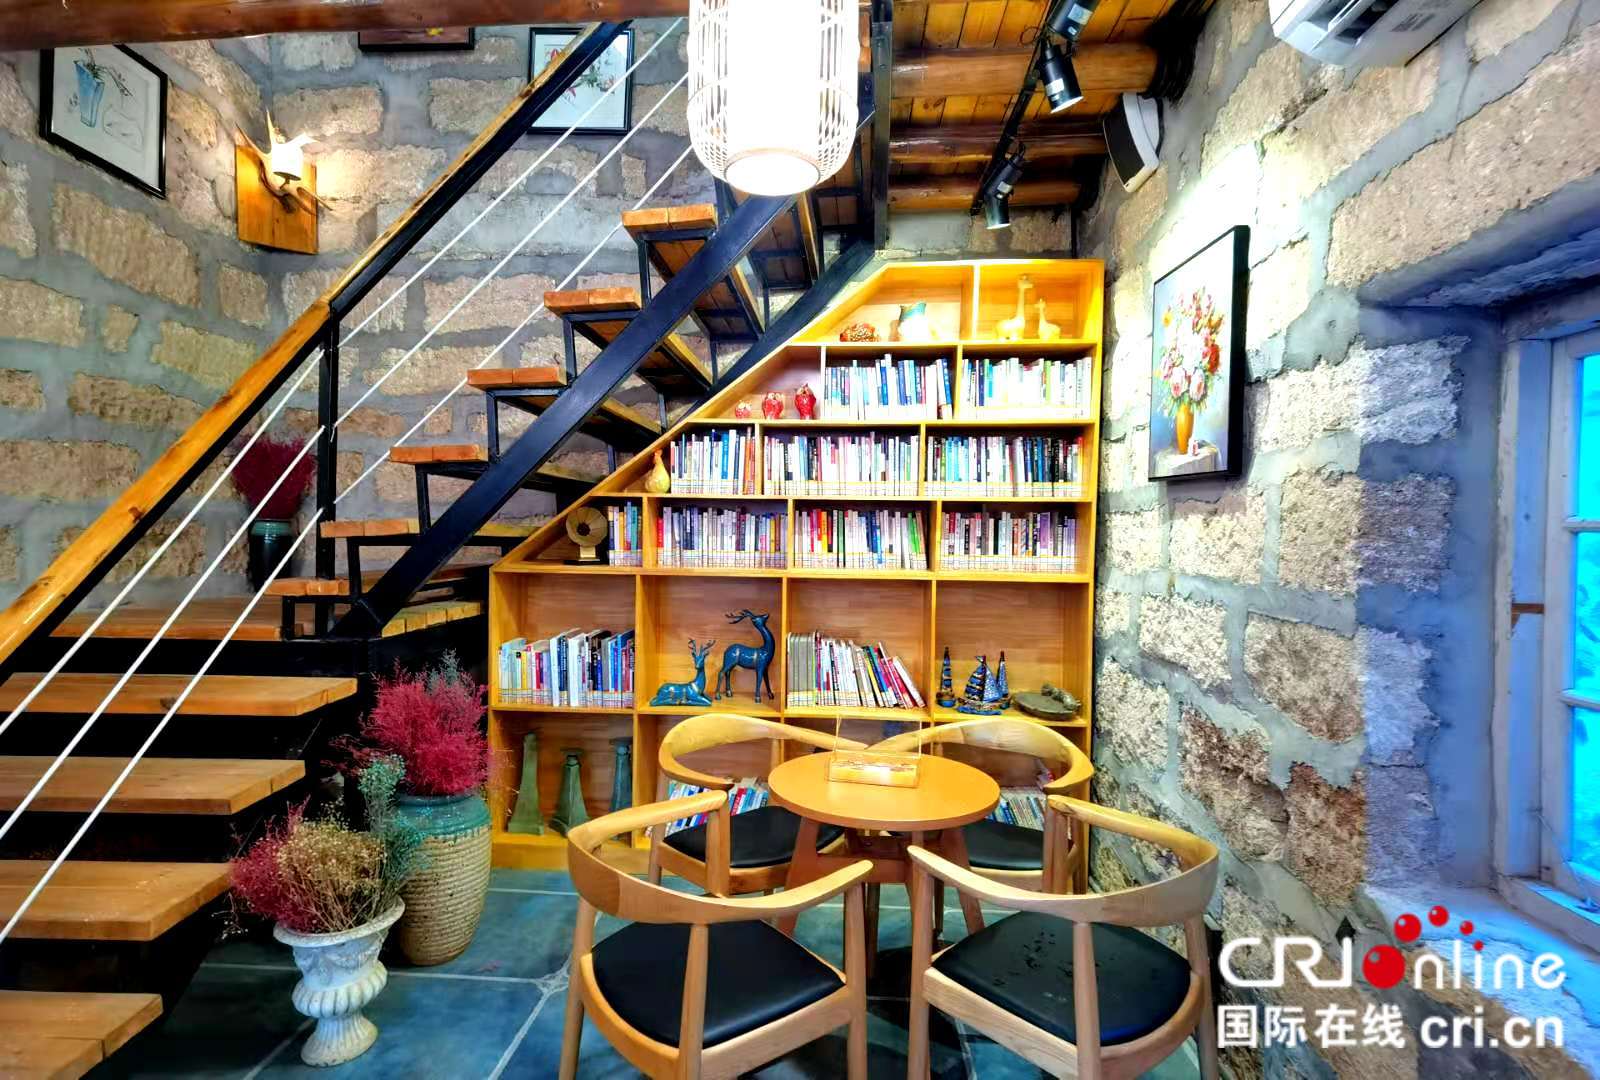 廣西首家海島智慧書房連結已附上【A】廣西潿洲島上的 “網紅書房”：用珊瑚石打造 享受智慧閱讀